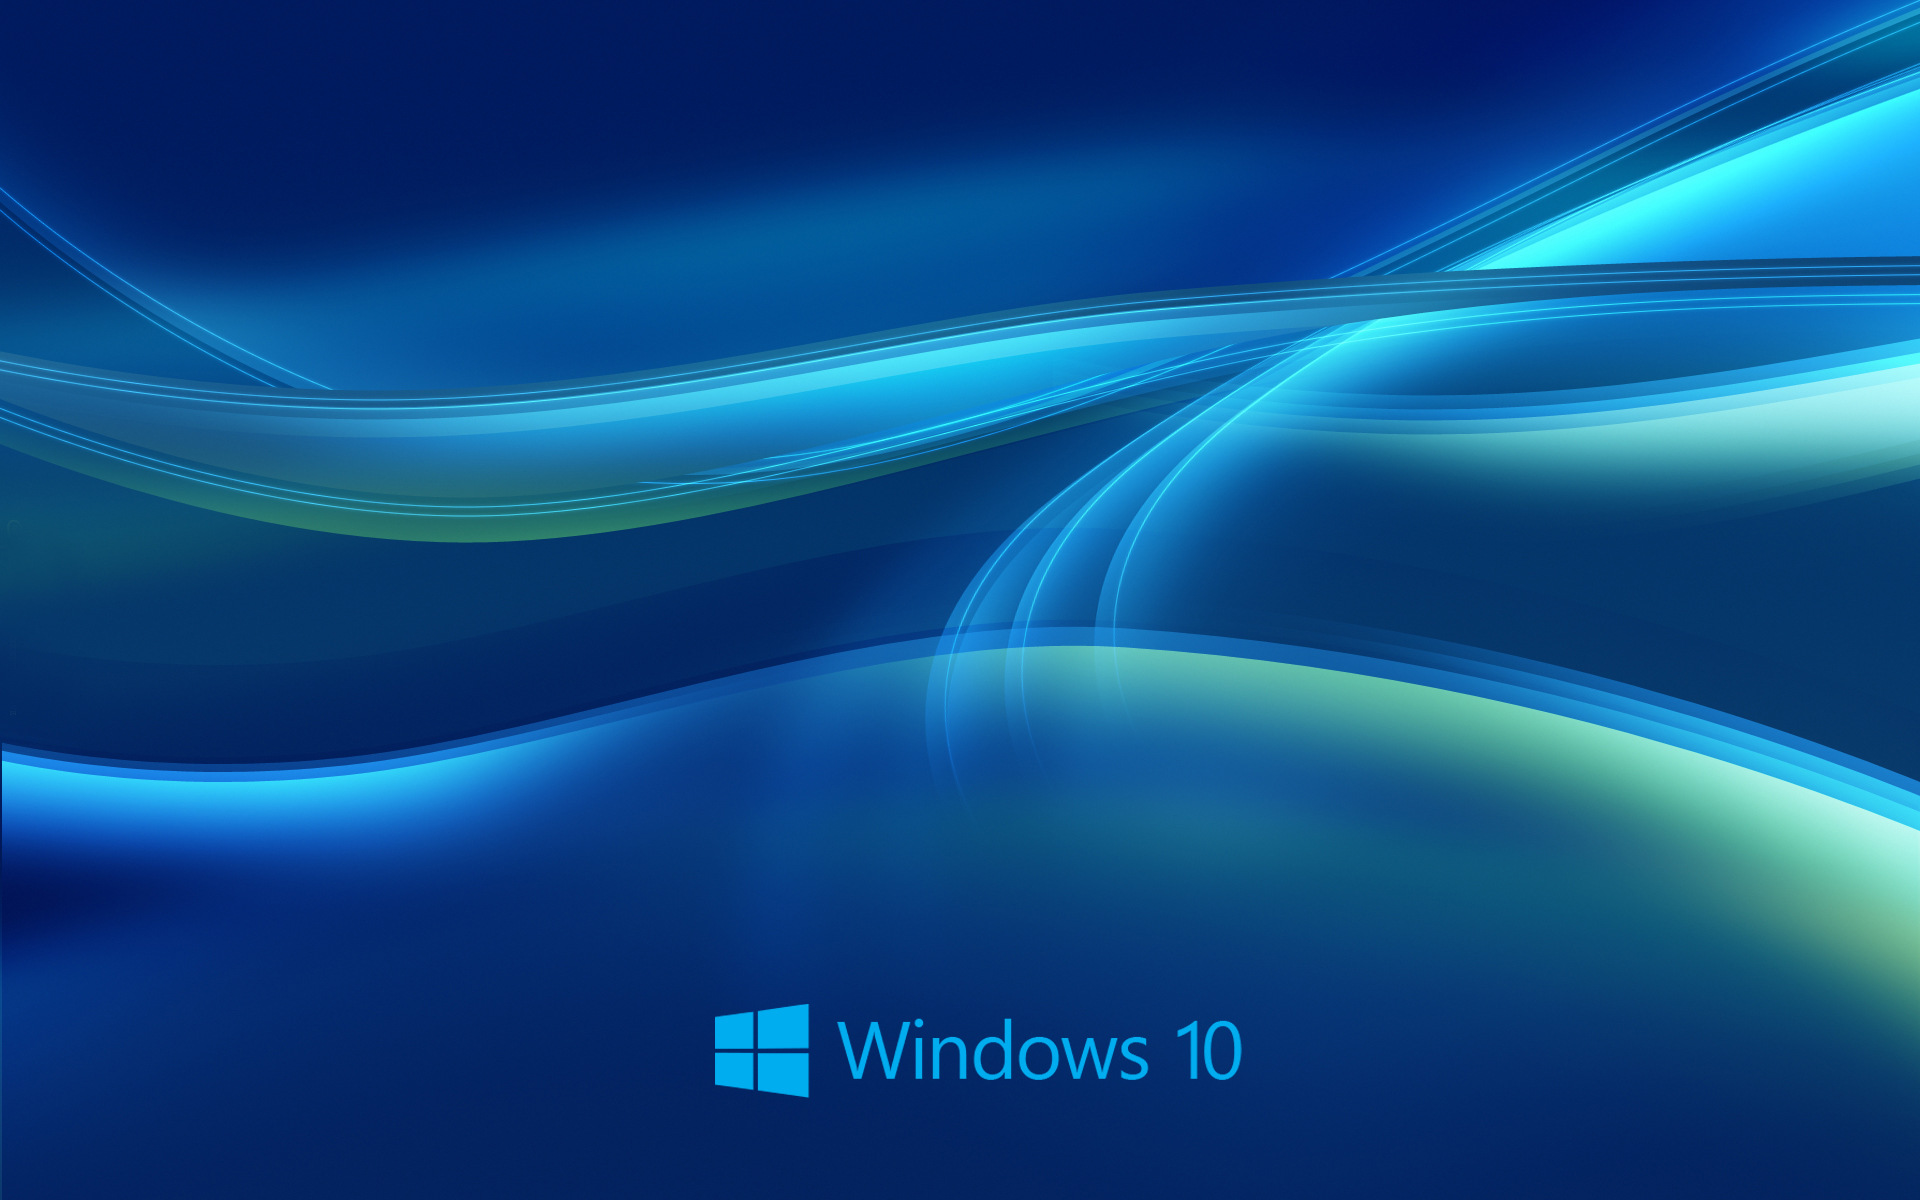 New Windows 10 Blue Wallpaper 9509 Wallpaper High Resolution